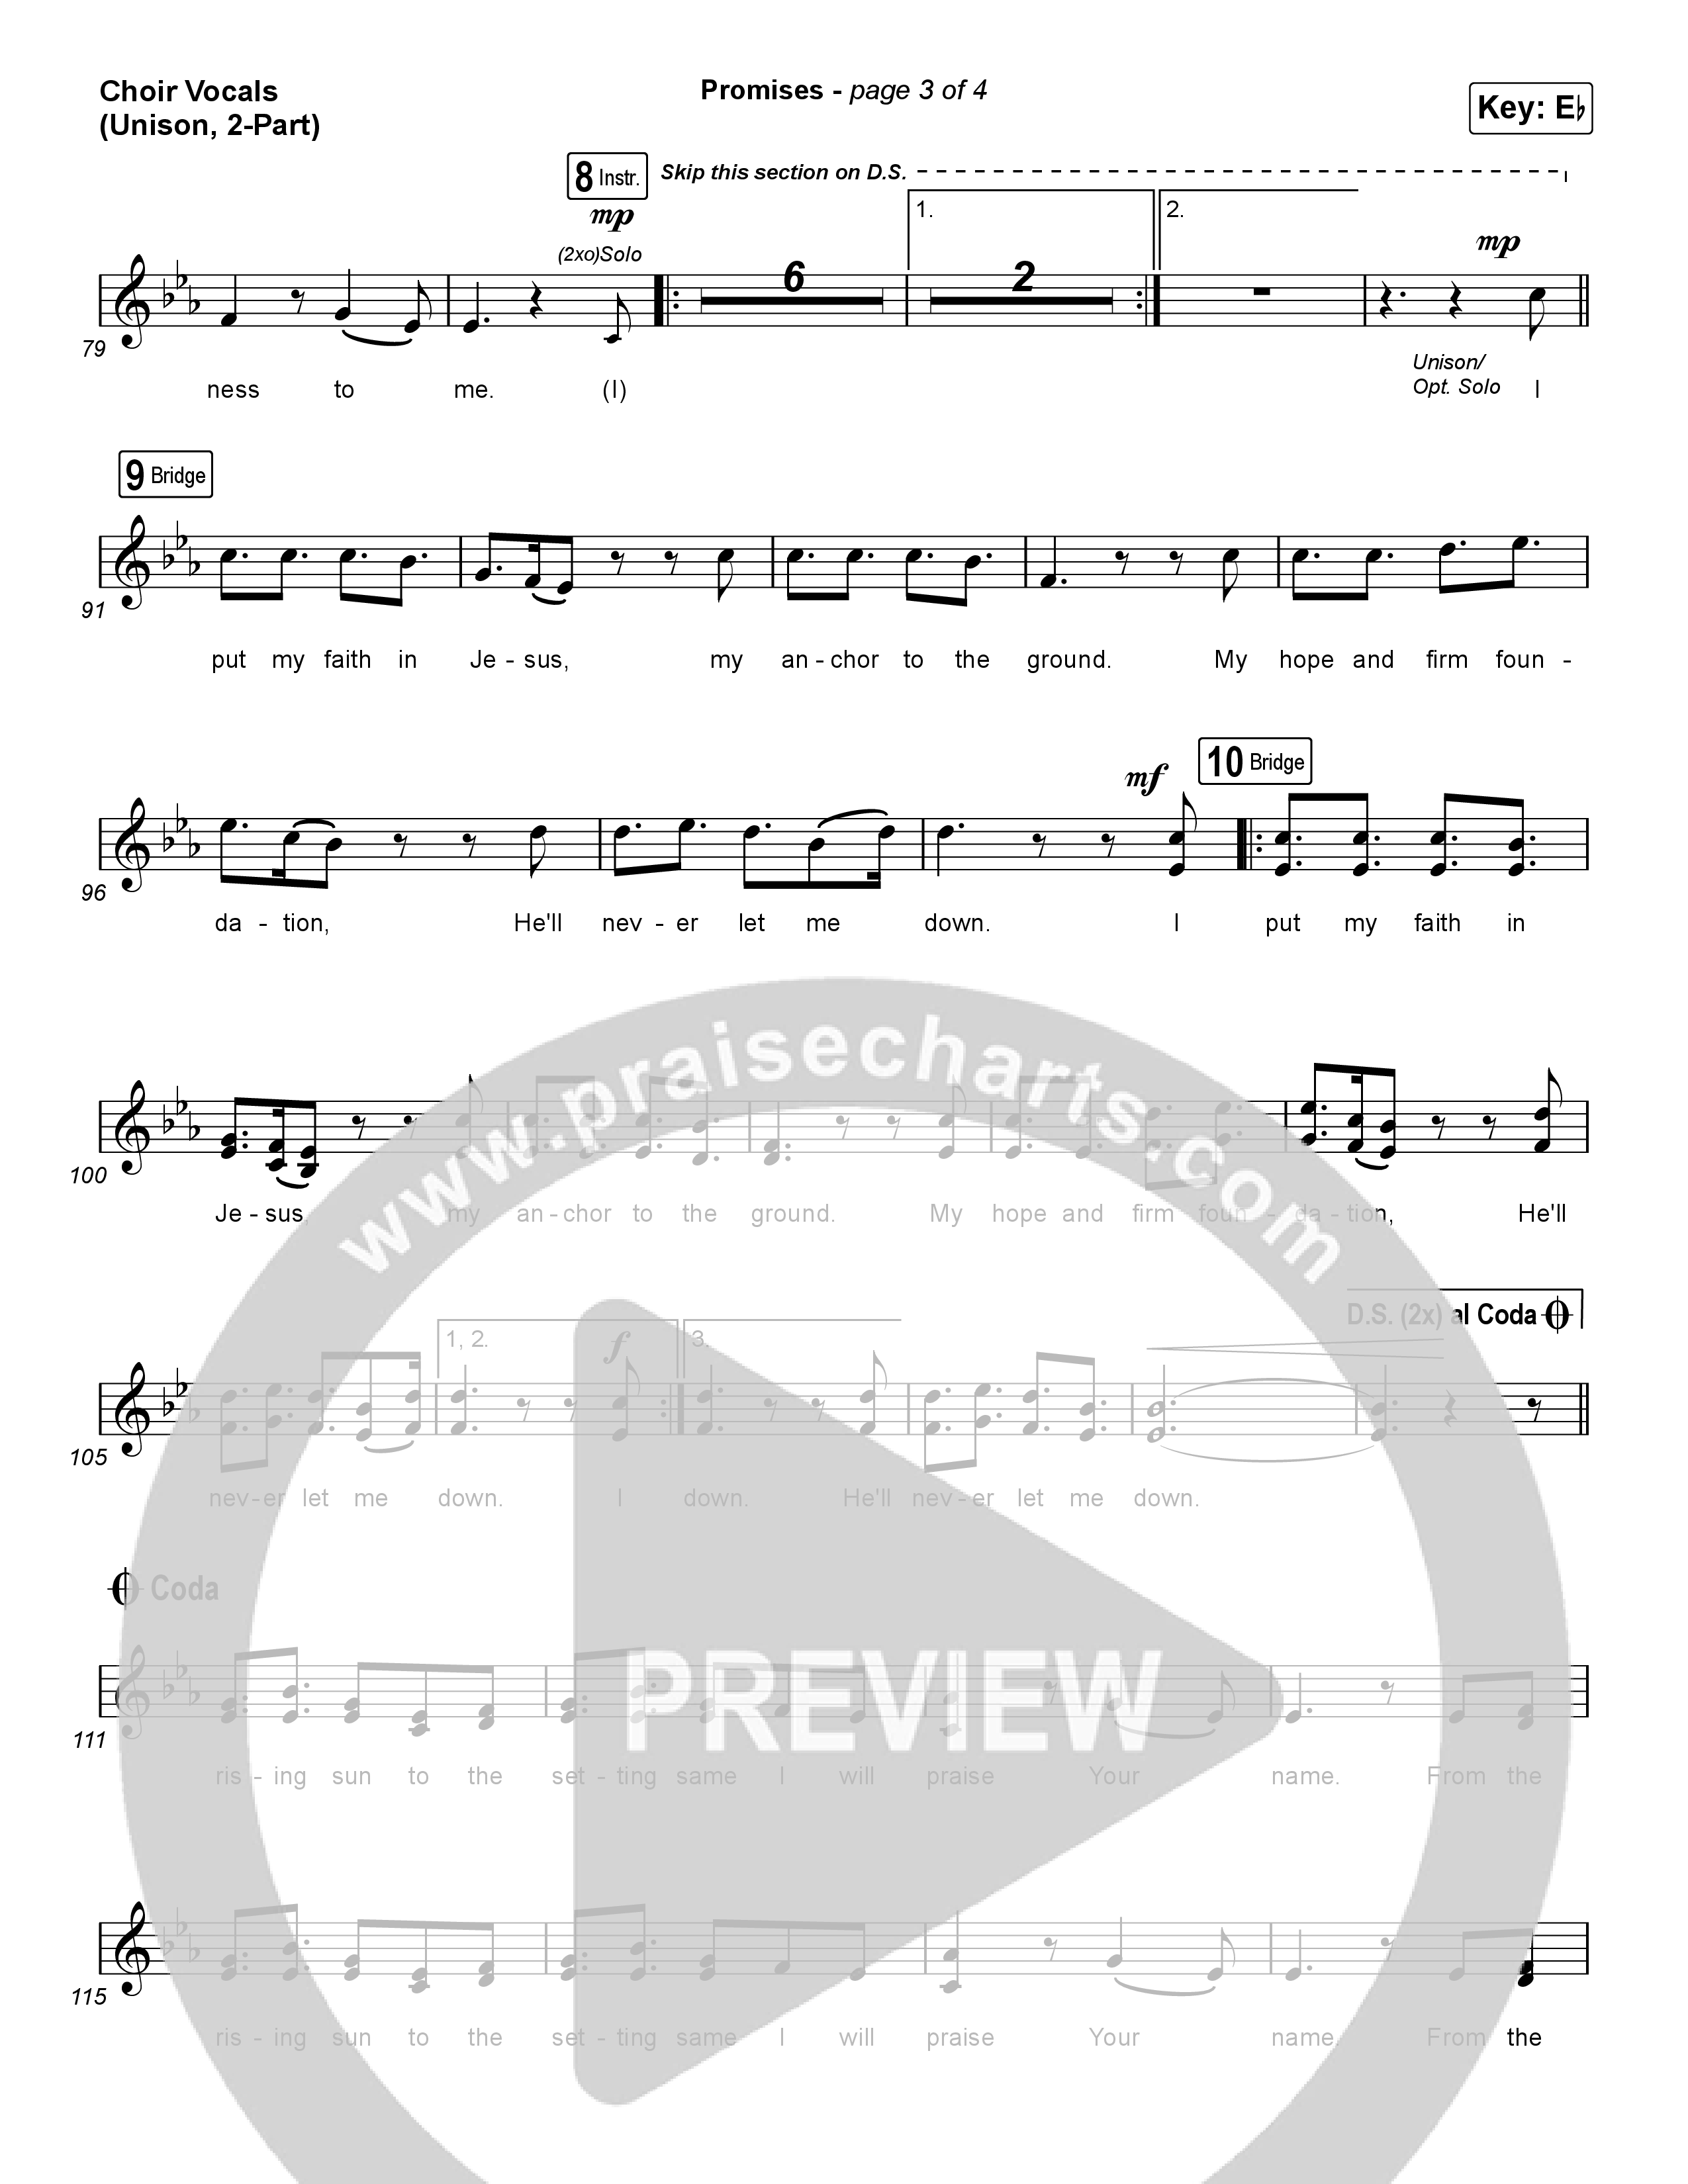 Promises (Unison/2-Part Choir) Choir Vocals (Uni/2-Part) (Maverick City Music / Arr. Erik Foster)